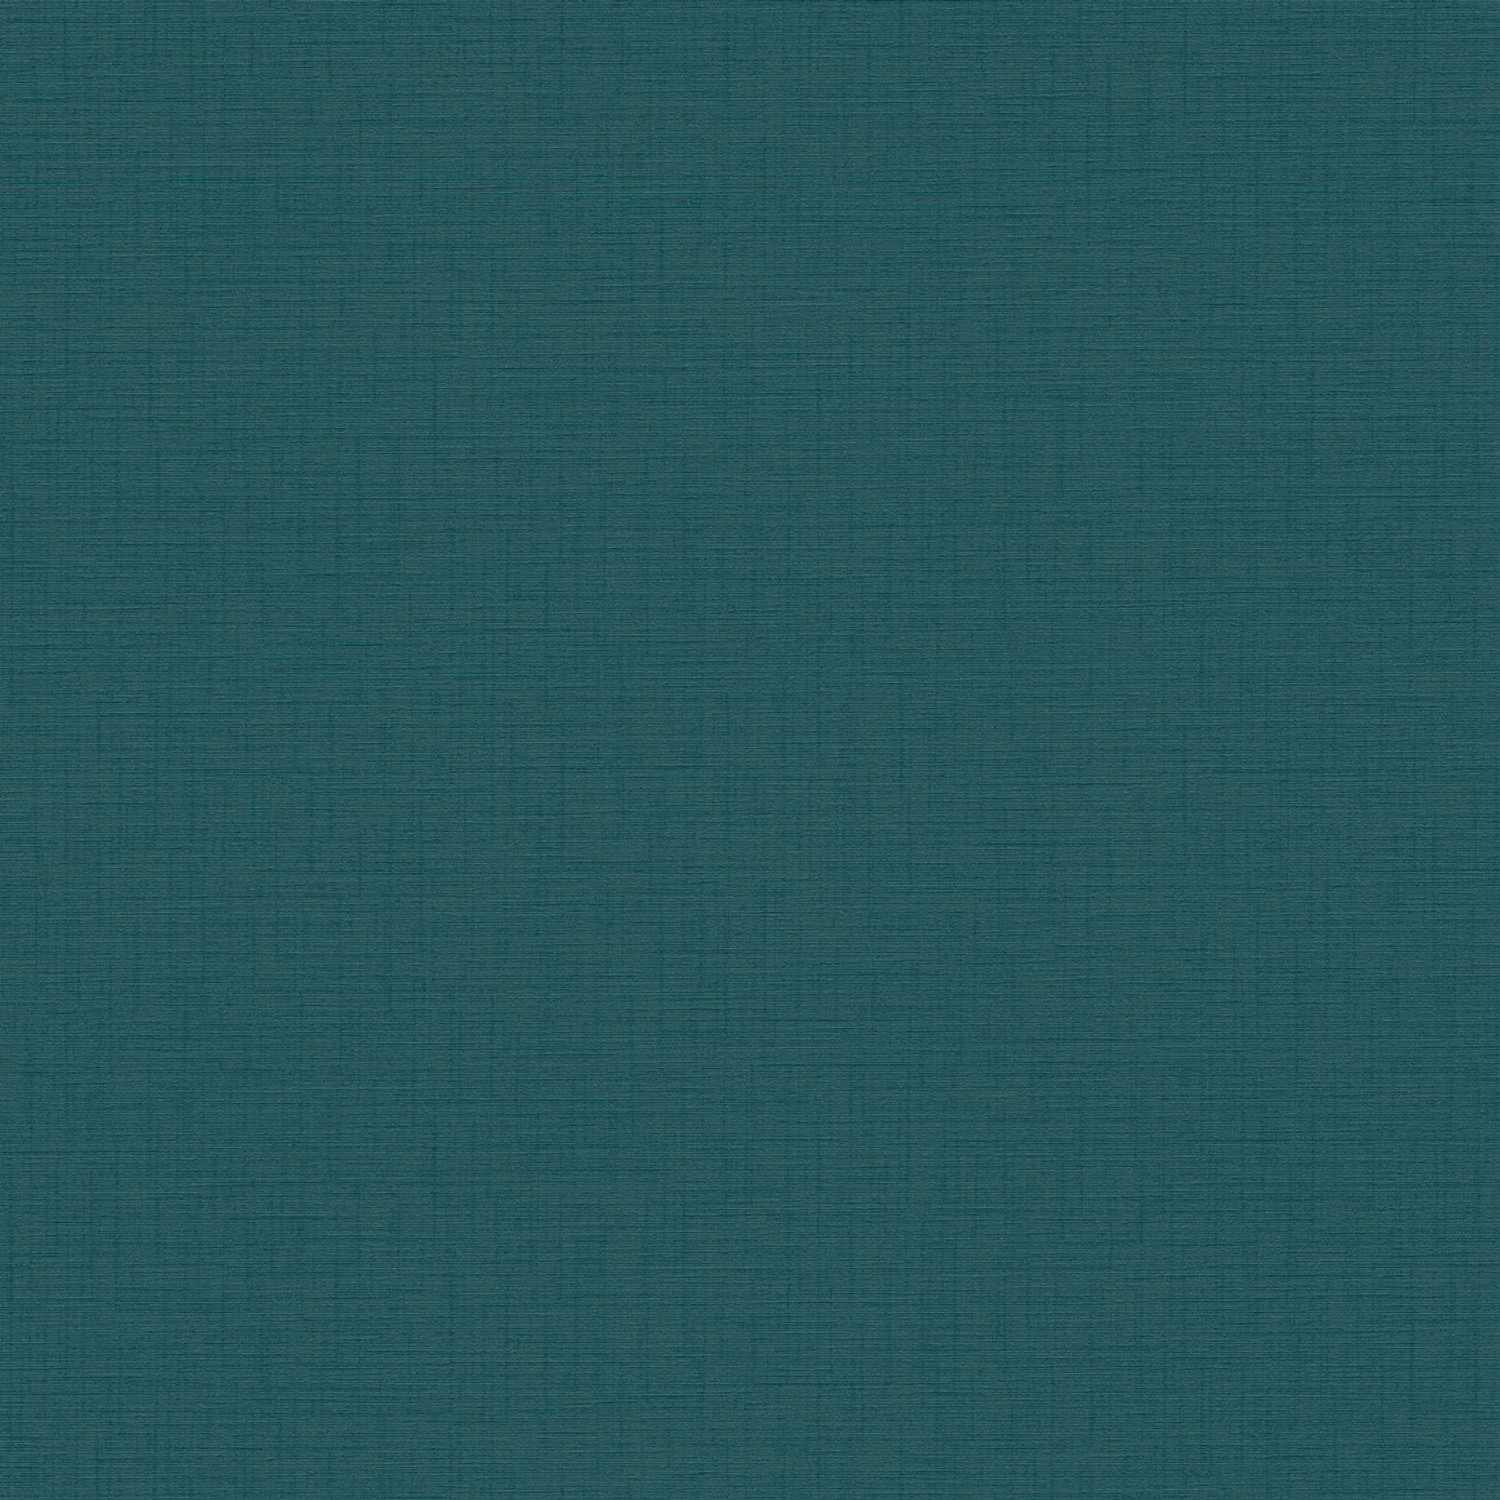 Bricoflor Petrol Tapete in Textiloptik Dunkle Vliestapete Einfarbig Ideal für Wohnzimmer und Küche Vlies Strukturtapete Blau Grün von Bricoflor